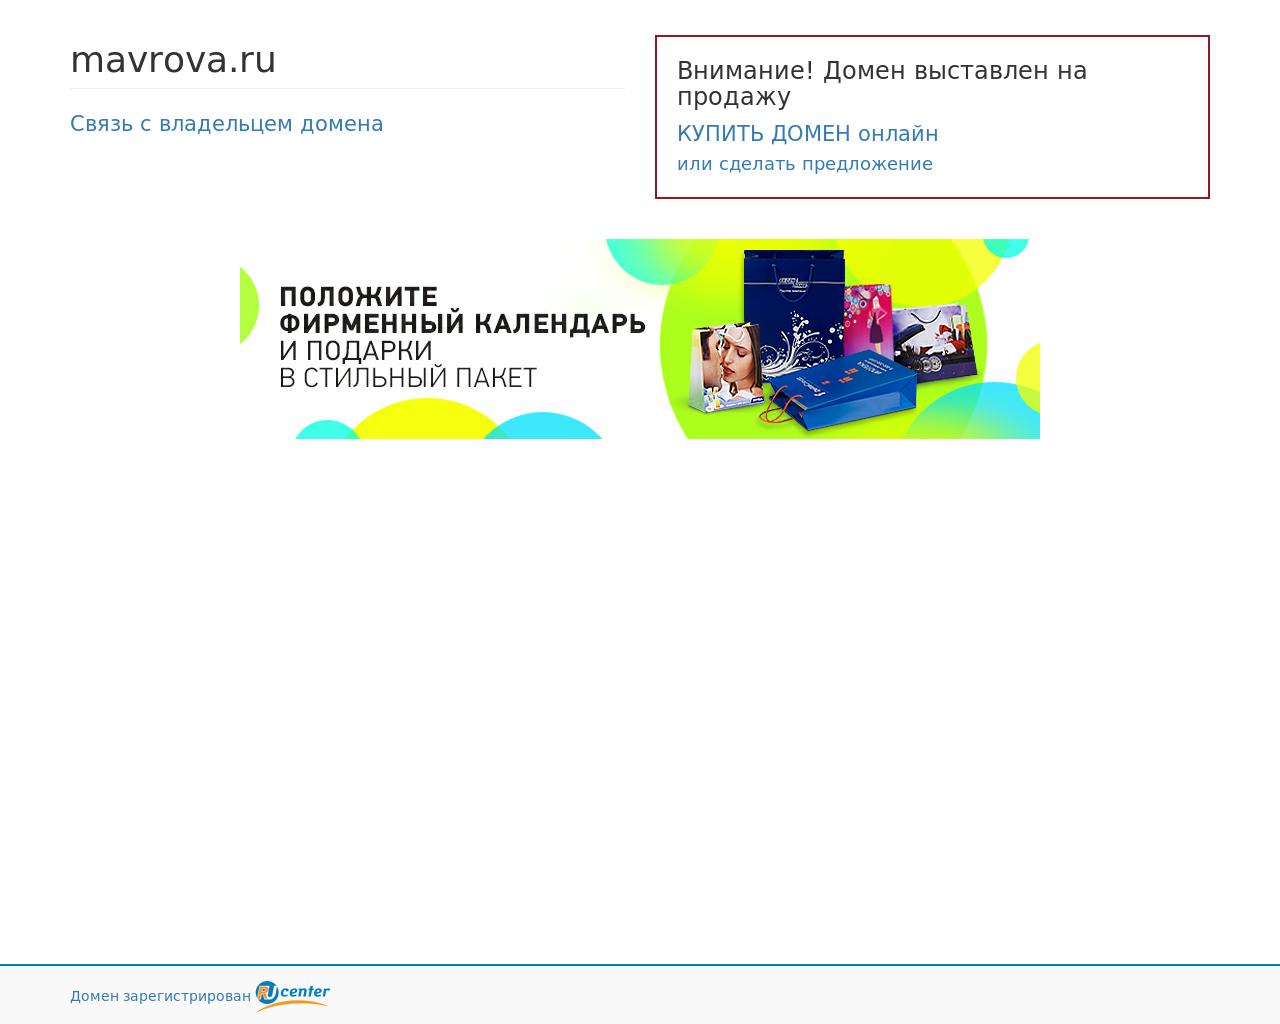 Изображение сайта mavrova.ru в разрешении 1280x1024